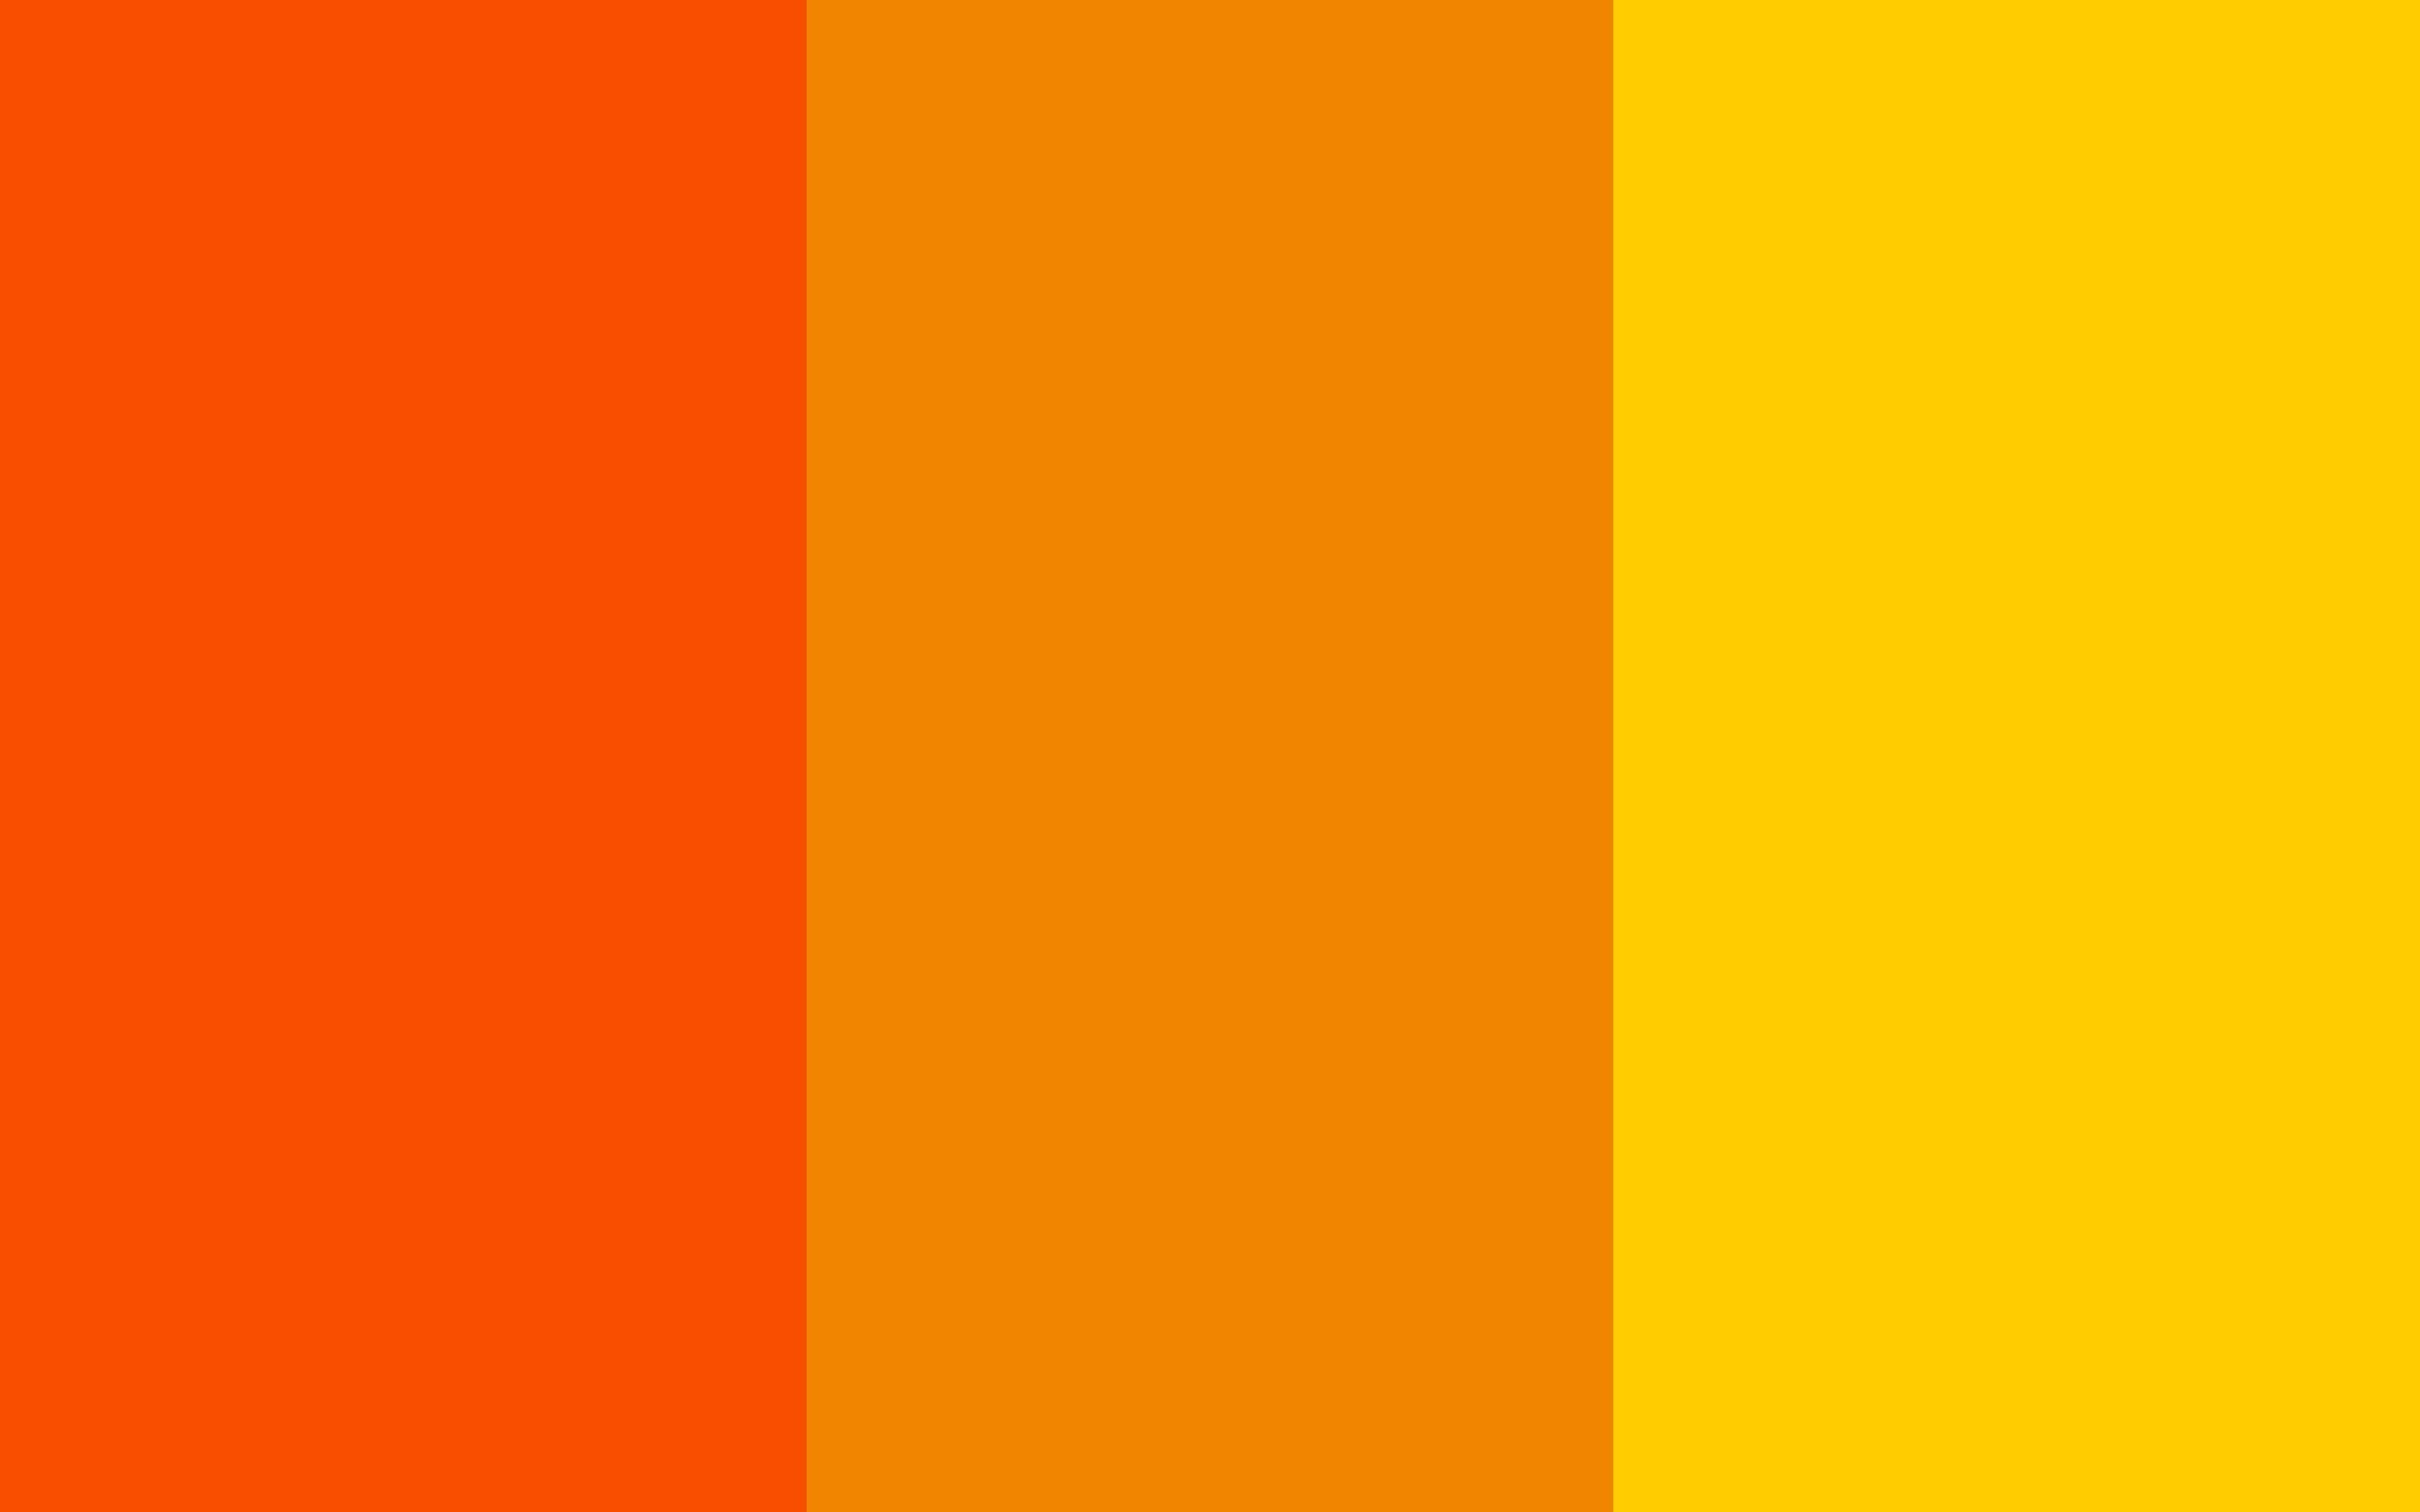 Включи 3 оранжевая. Оранжевый палитра ЦМИК. Оранжевый пантон Смик. Оранжевый Смик палитра. Оранжевый цвет.